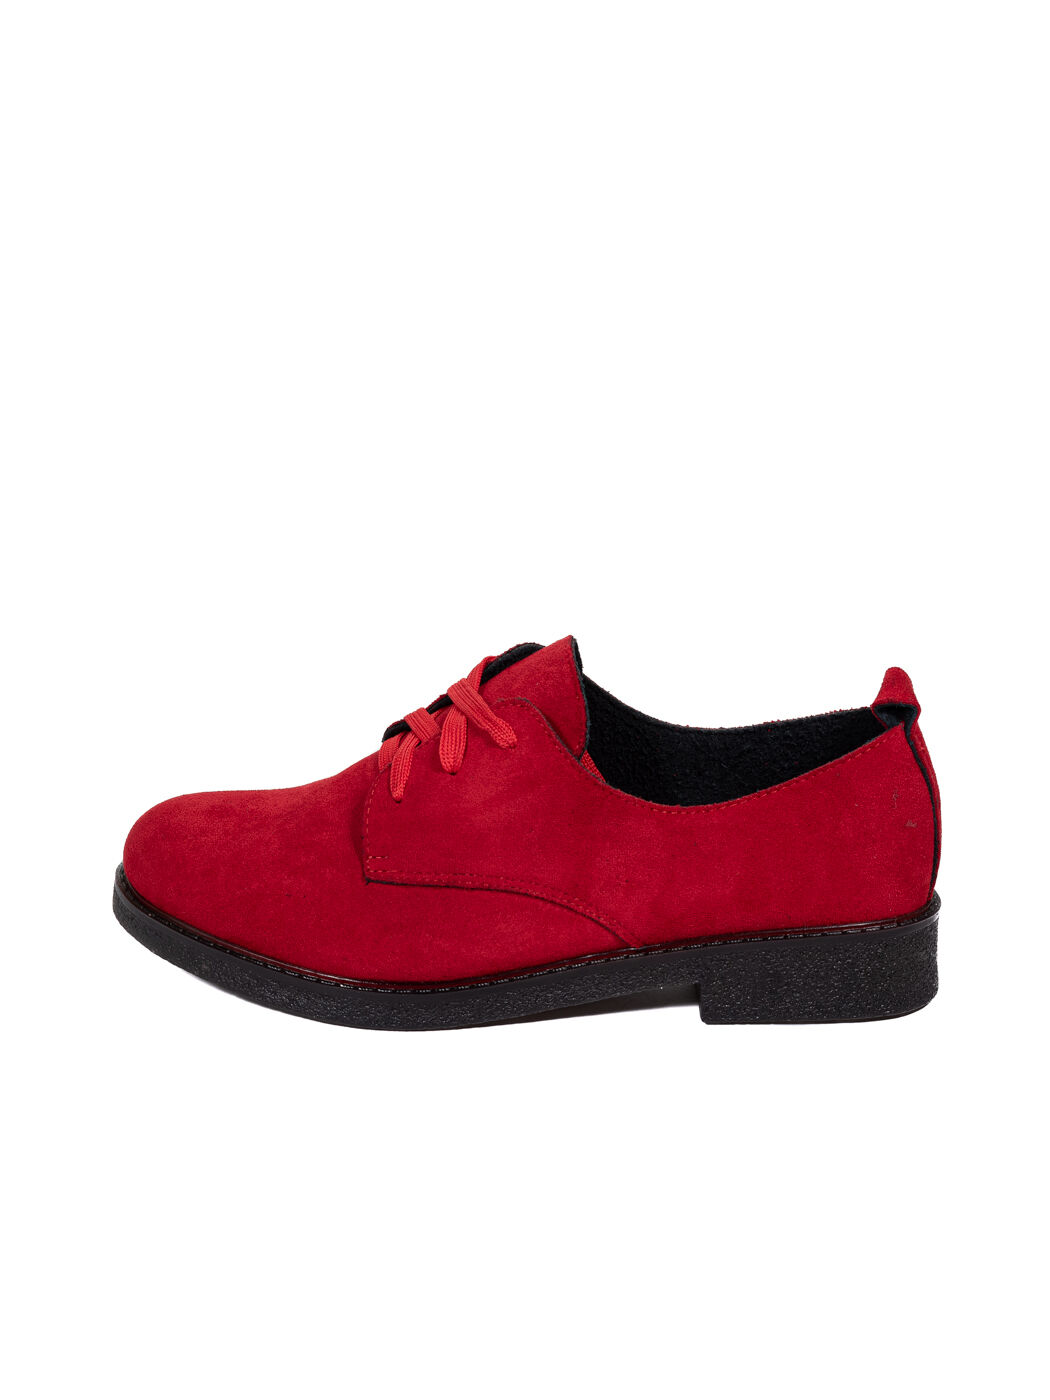 Туфли Oxfords женские красные экозамша каблук устойчивый демисезон 10M